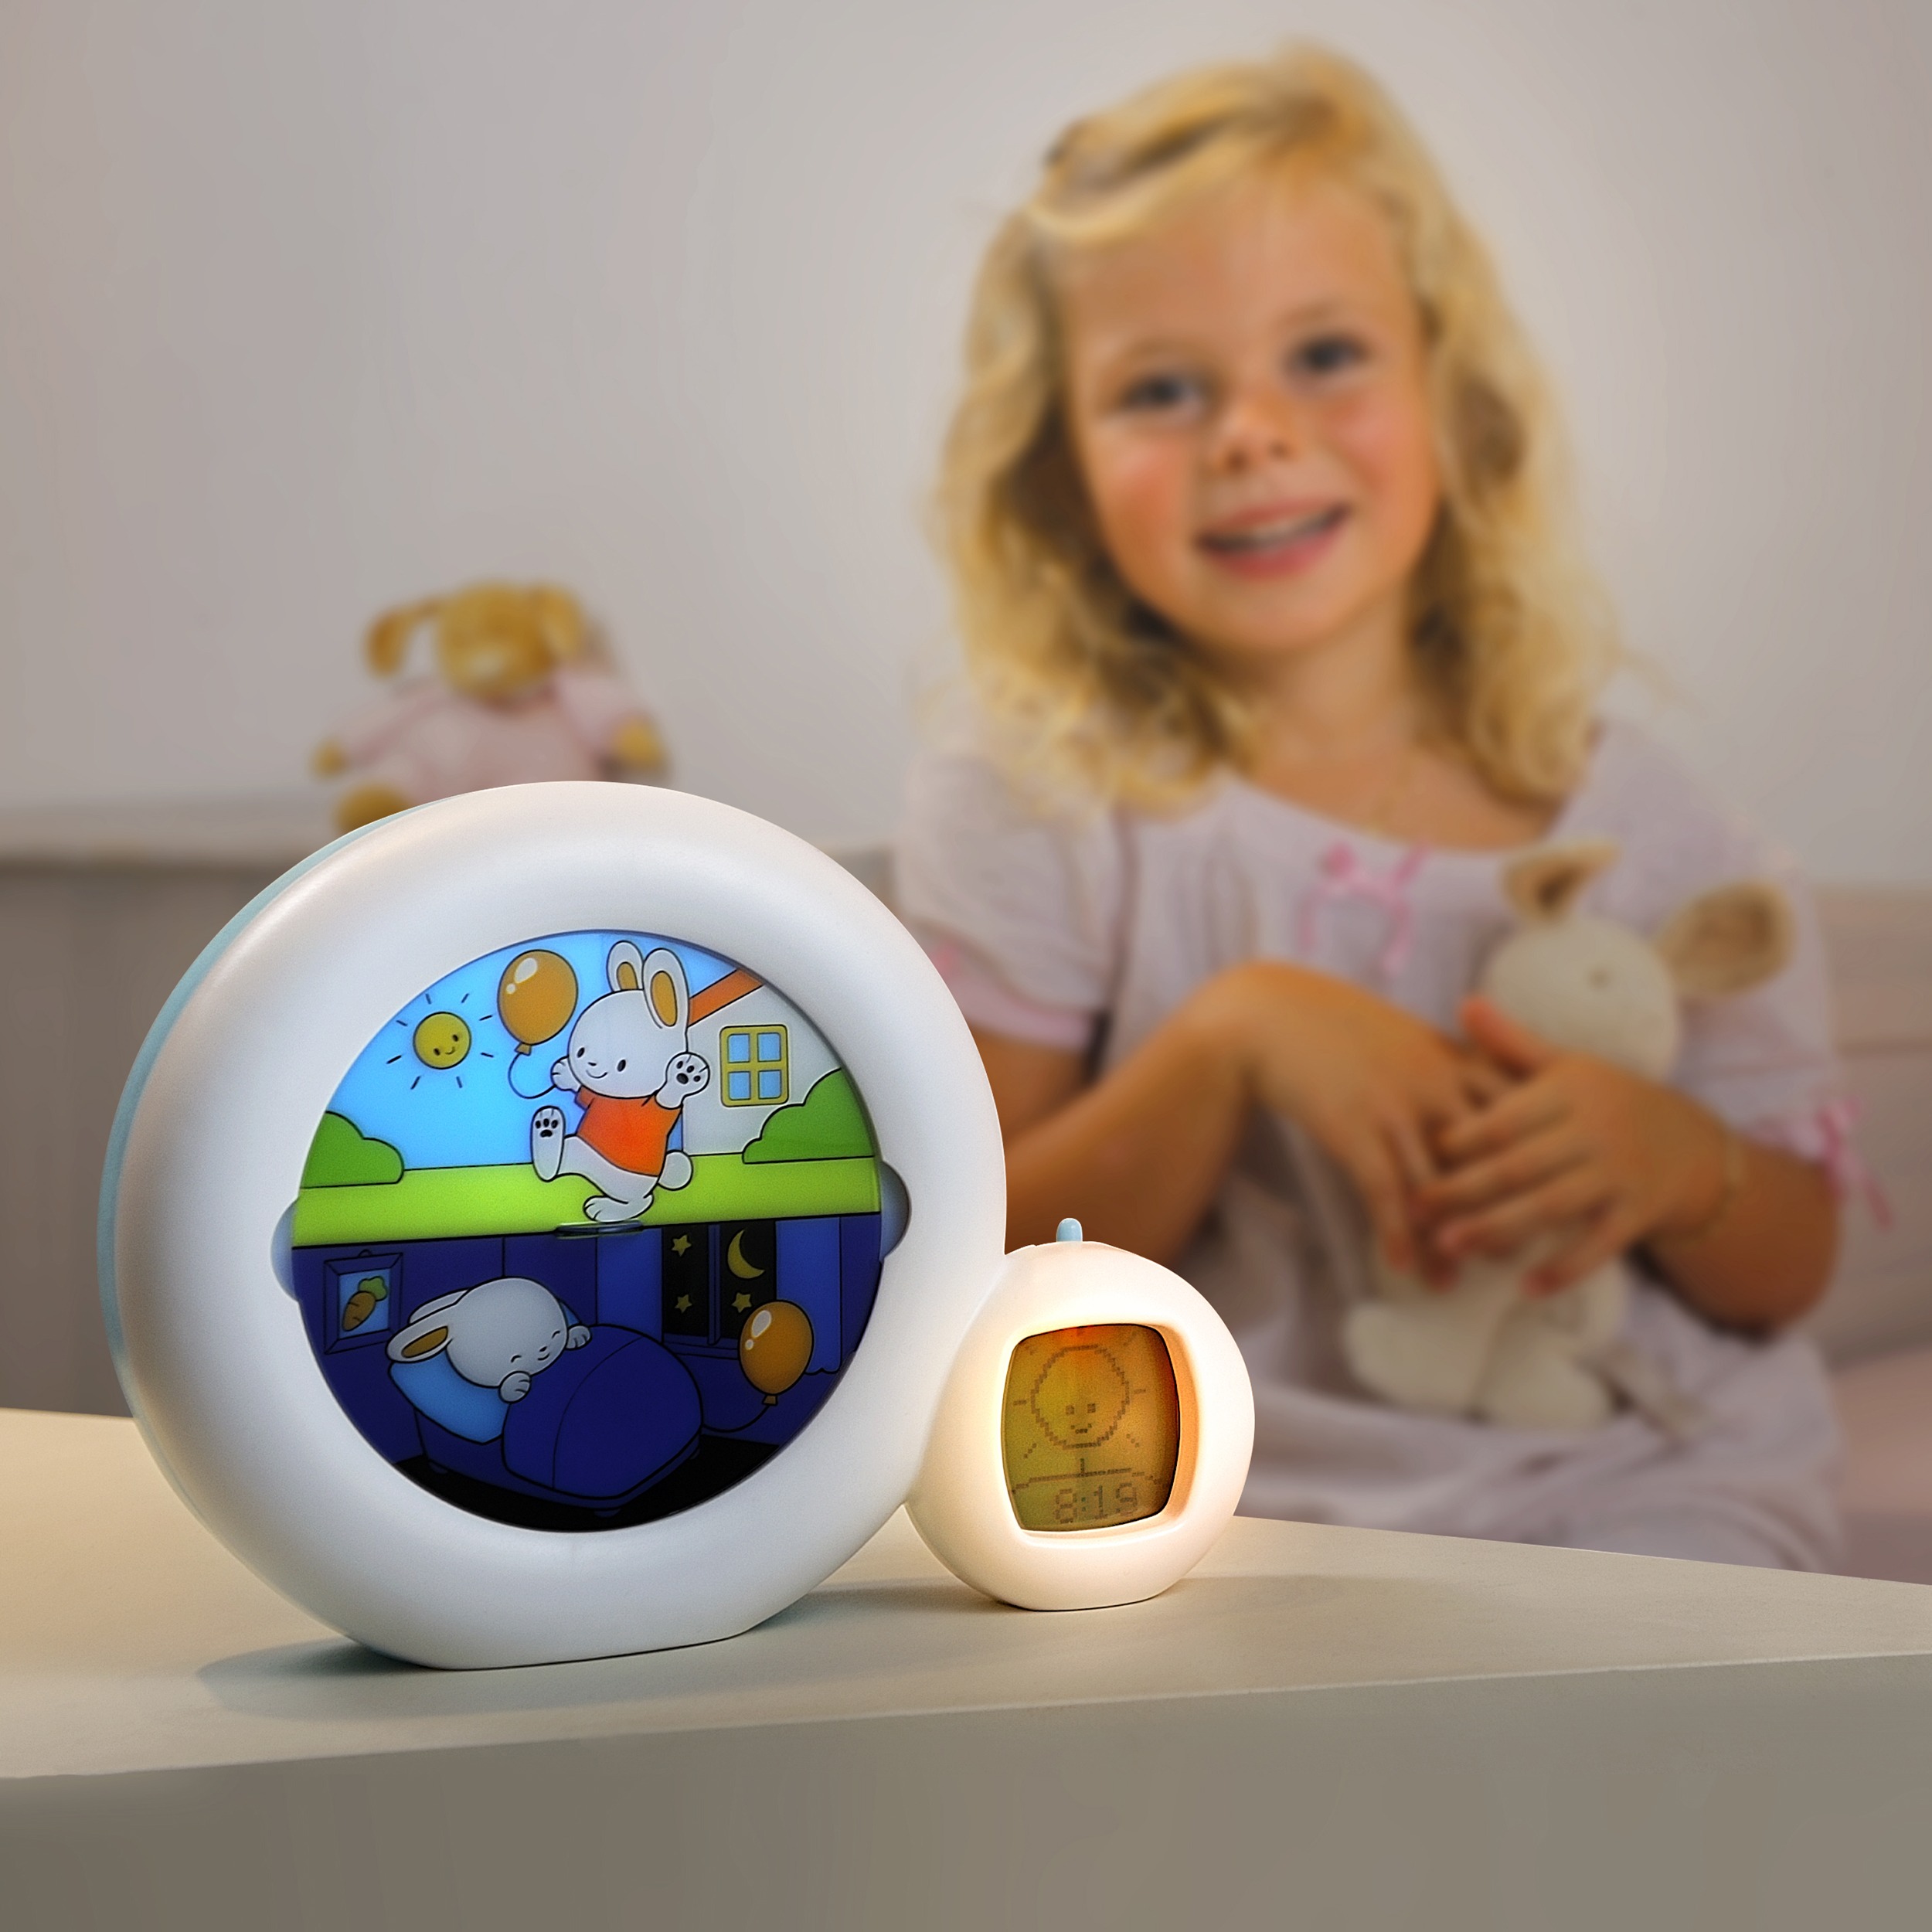 Réveil Kid'Sleep Clock : le réveil qui facilite l'apprentissage du